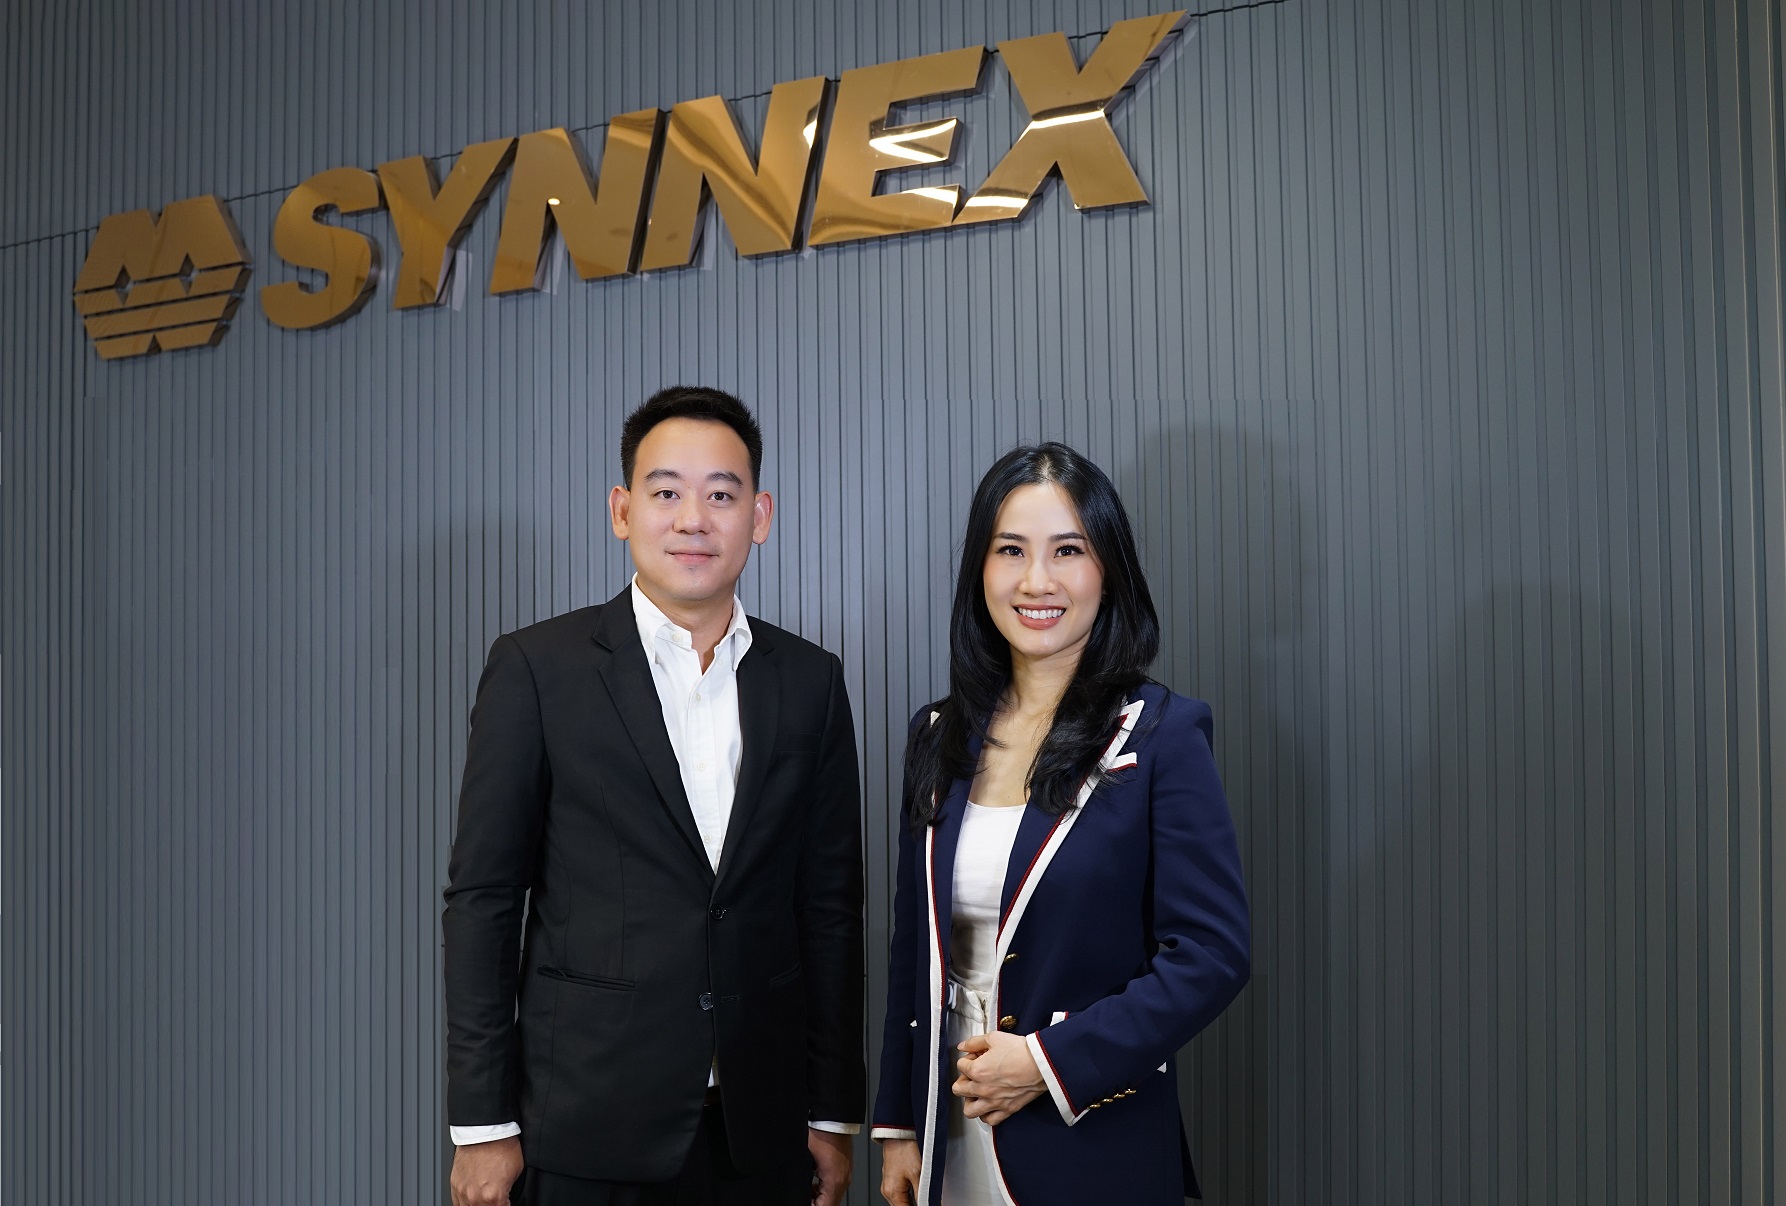 รายการ Finansia Exclusive Talk ตอน SYNEX-การเติบโตครั้งใหม่ในยุค 5G